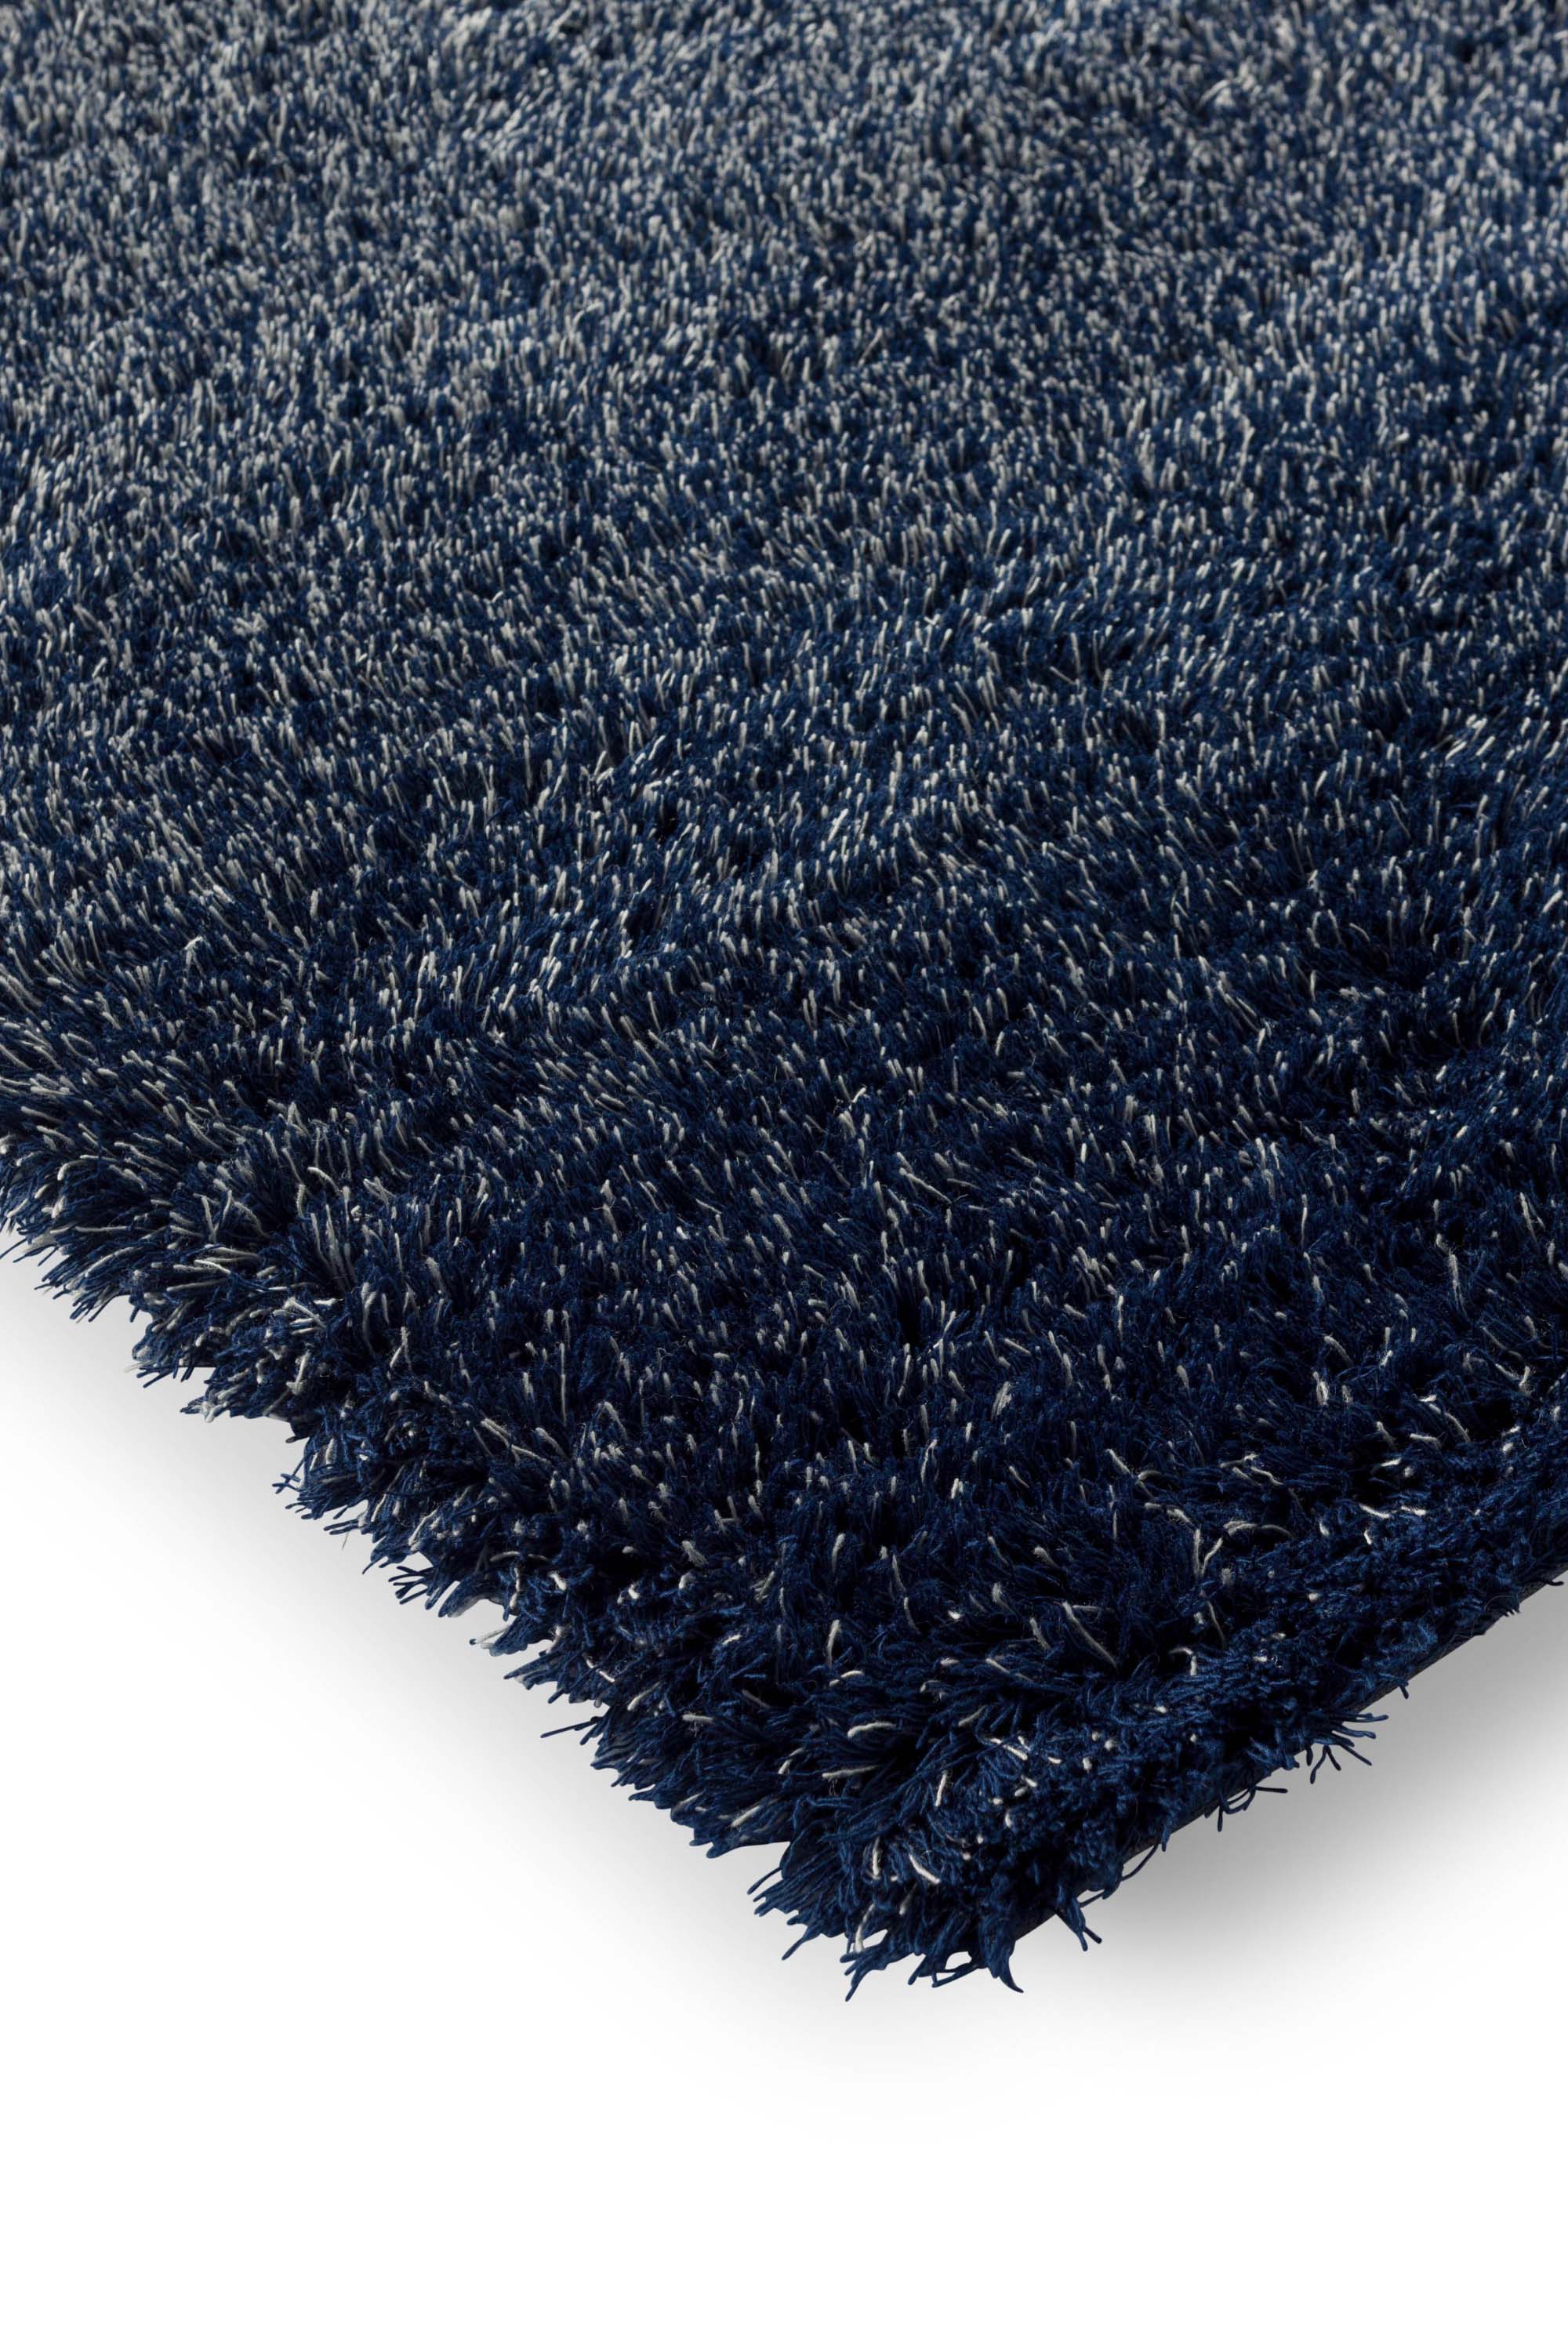 Plain blue rug with shaggy pile